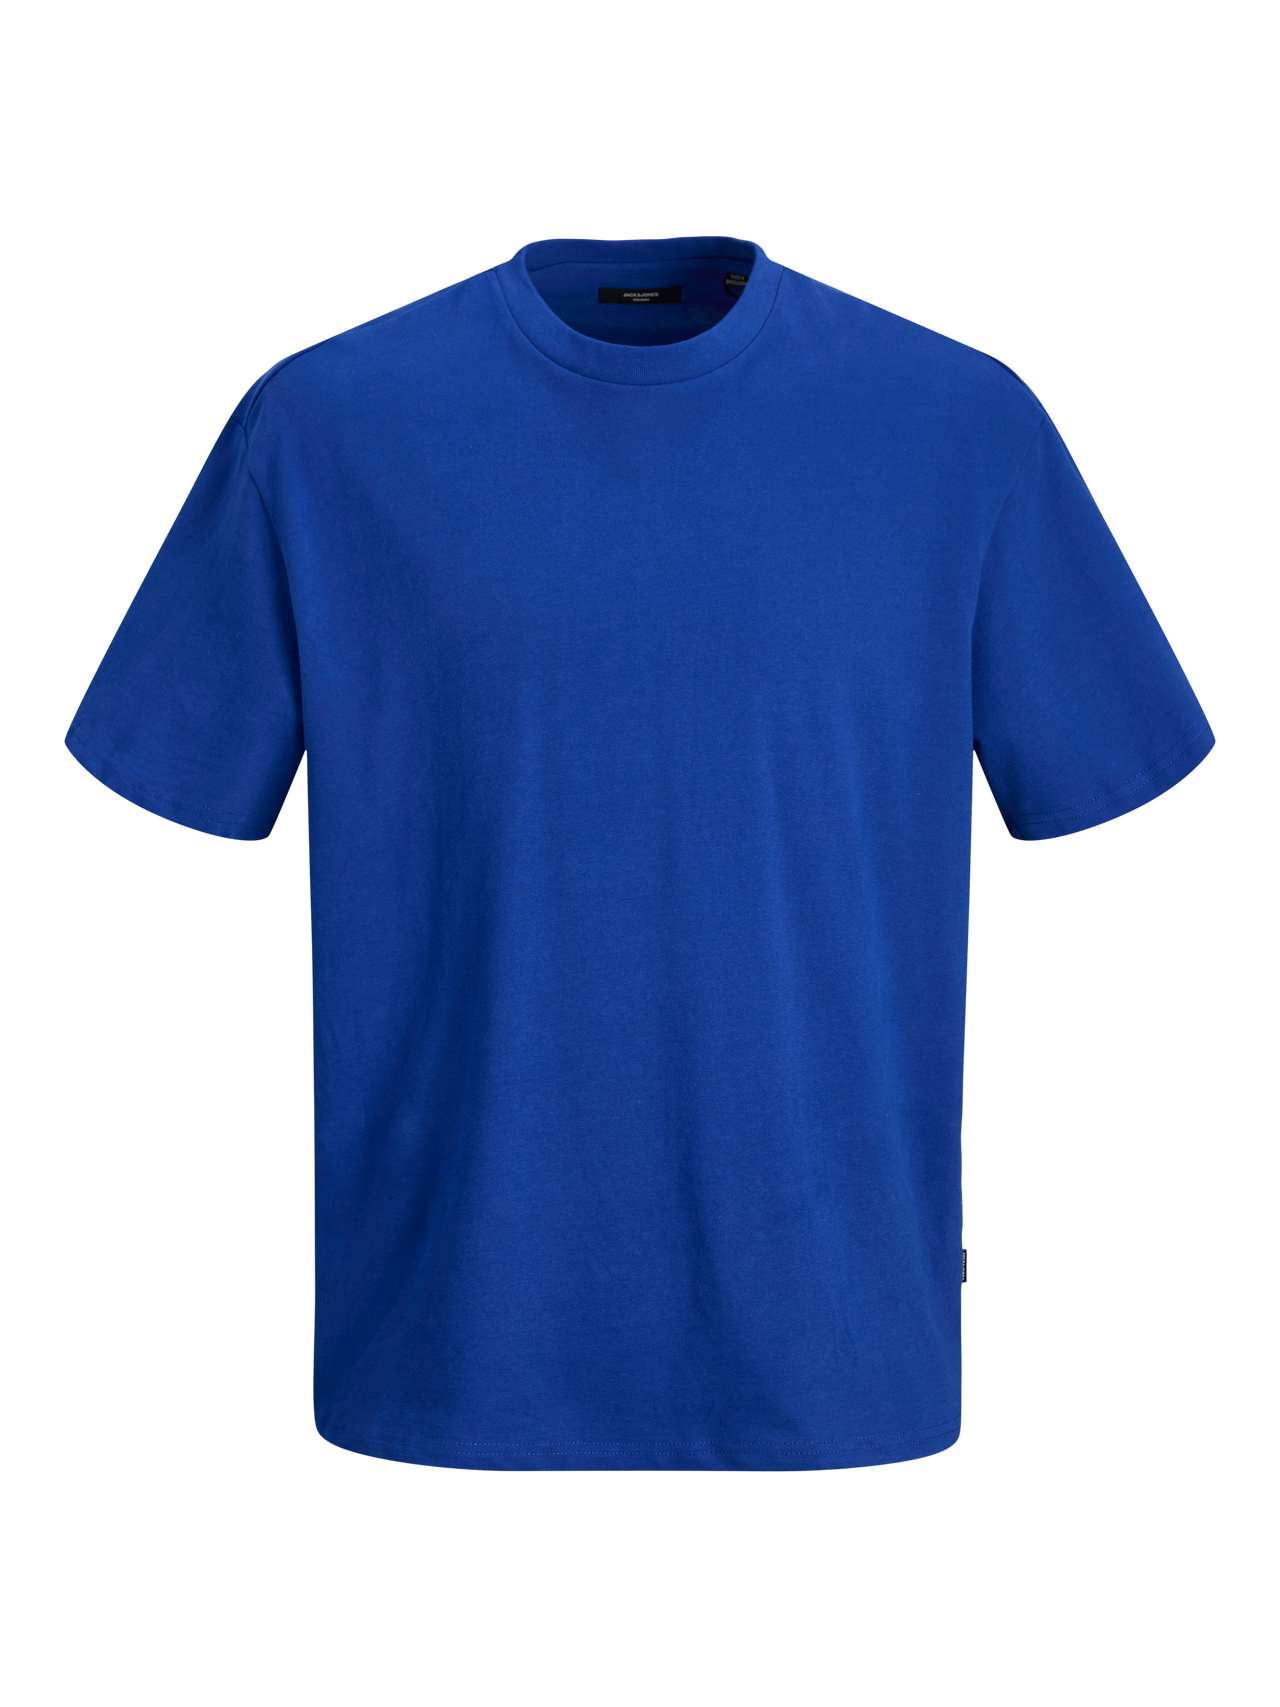 Jack & Jones Plain Crew neck T-shirt -Surf the Web - 12255176